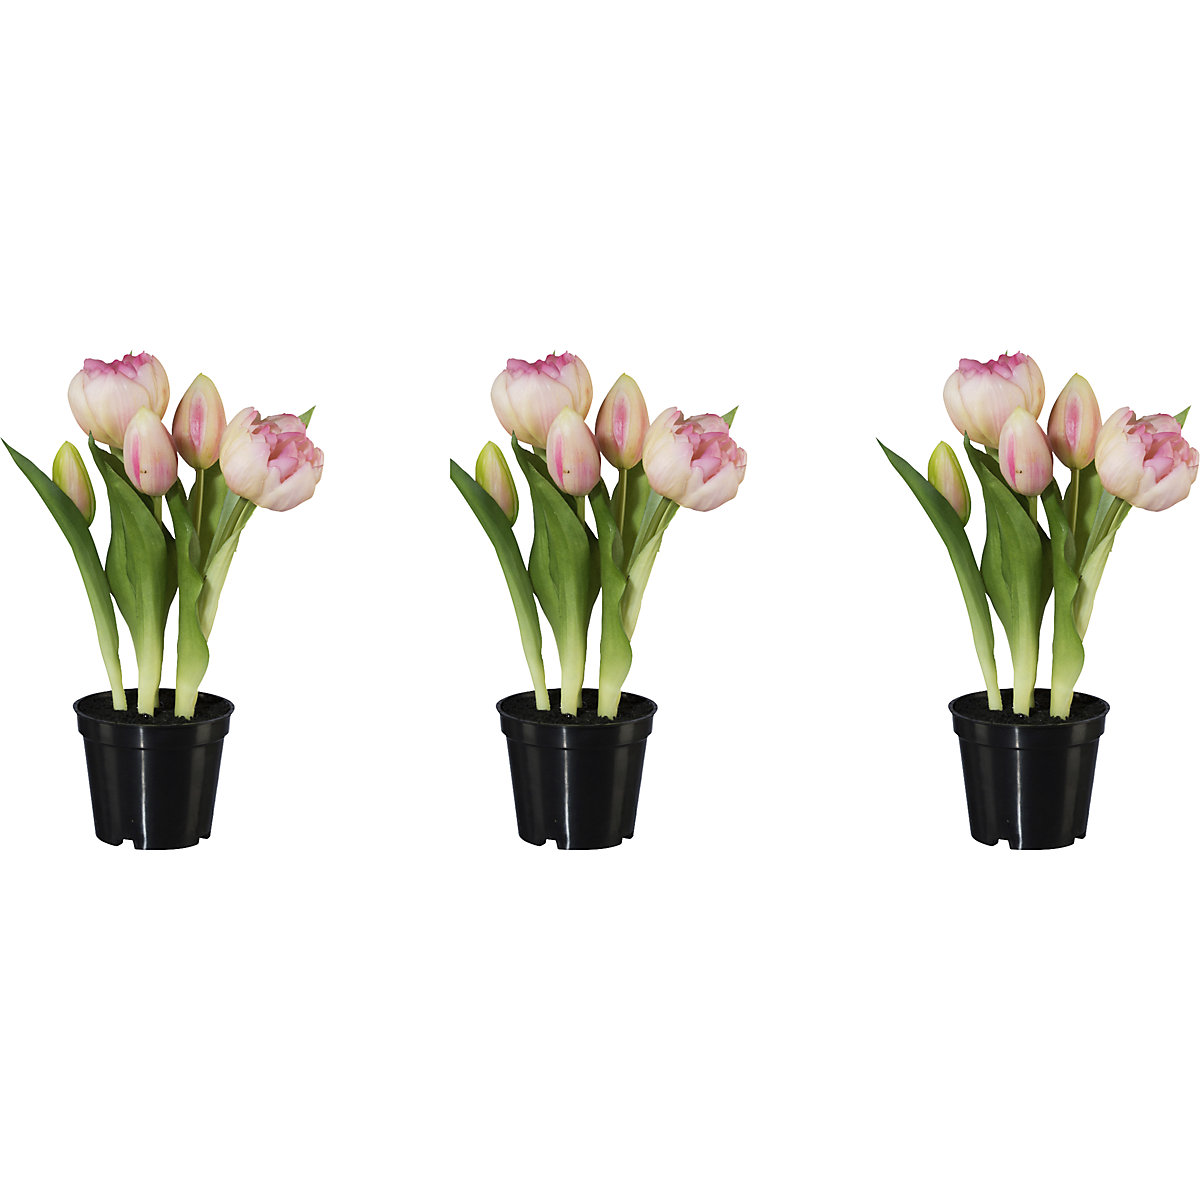 Plné tulipány, real touch, v kvetináči